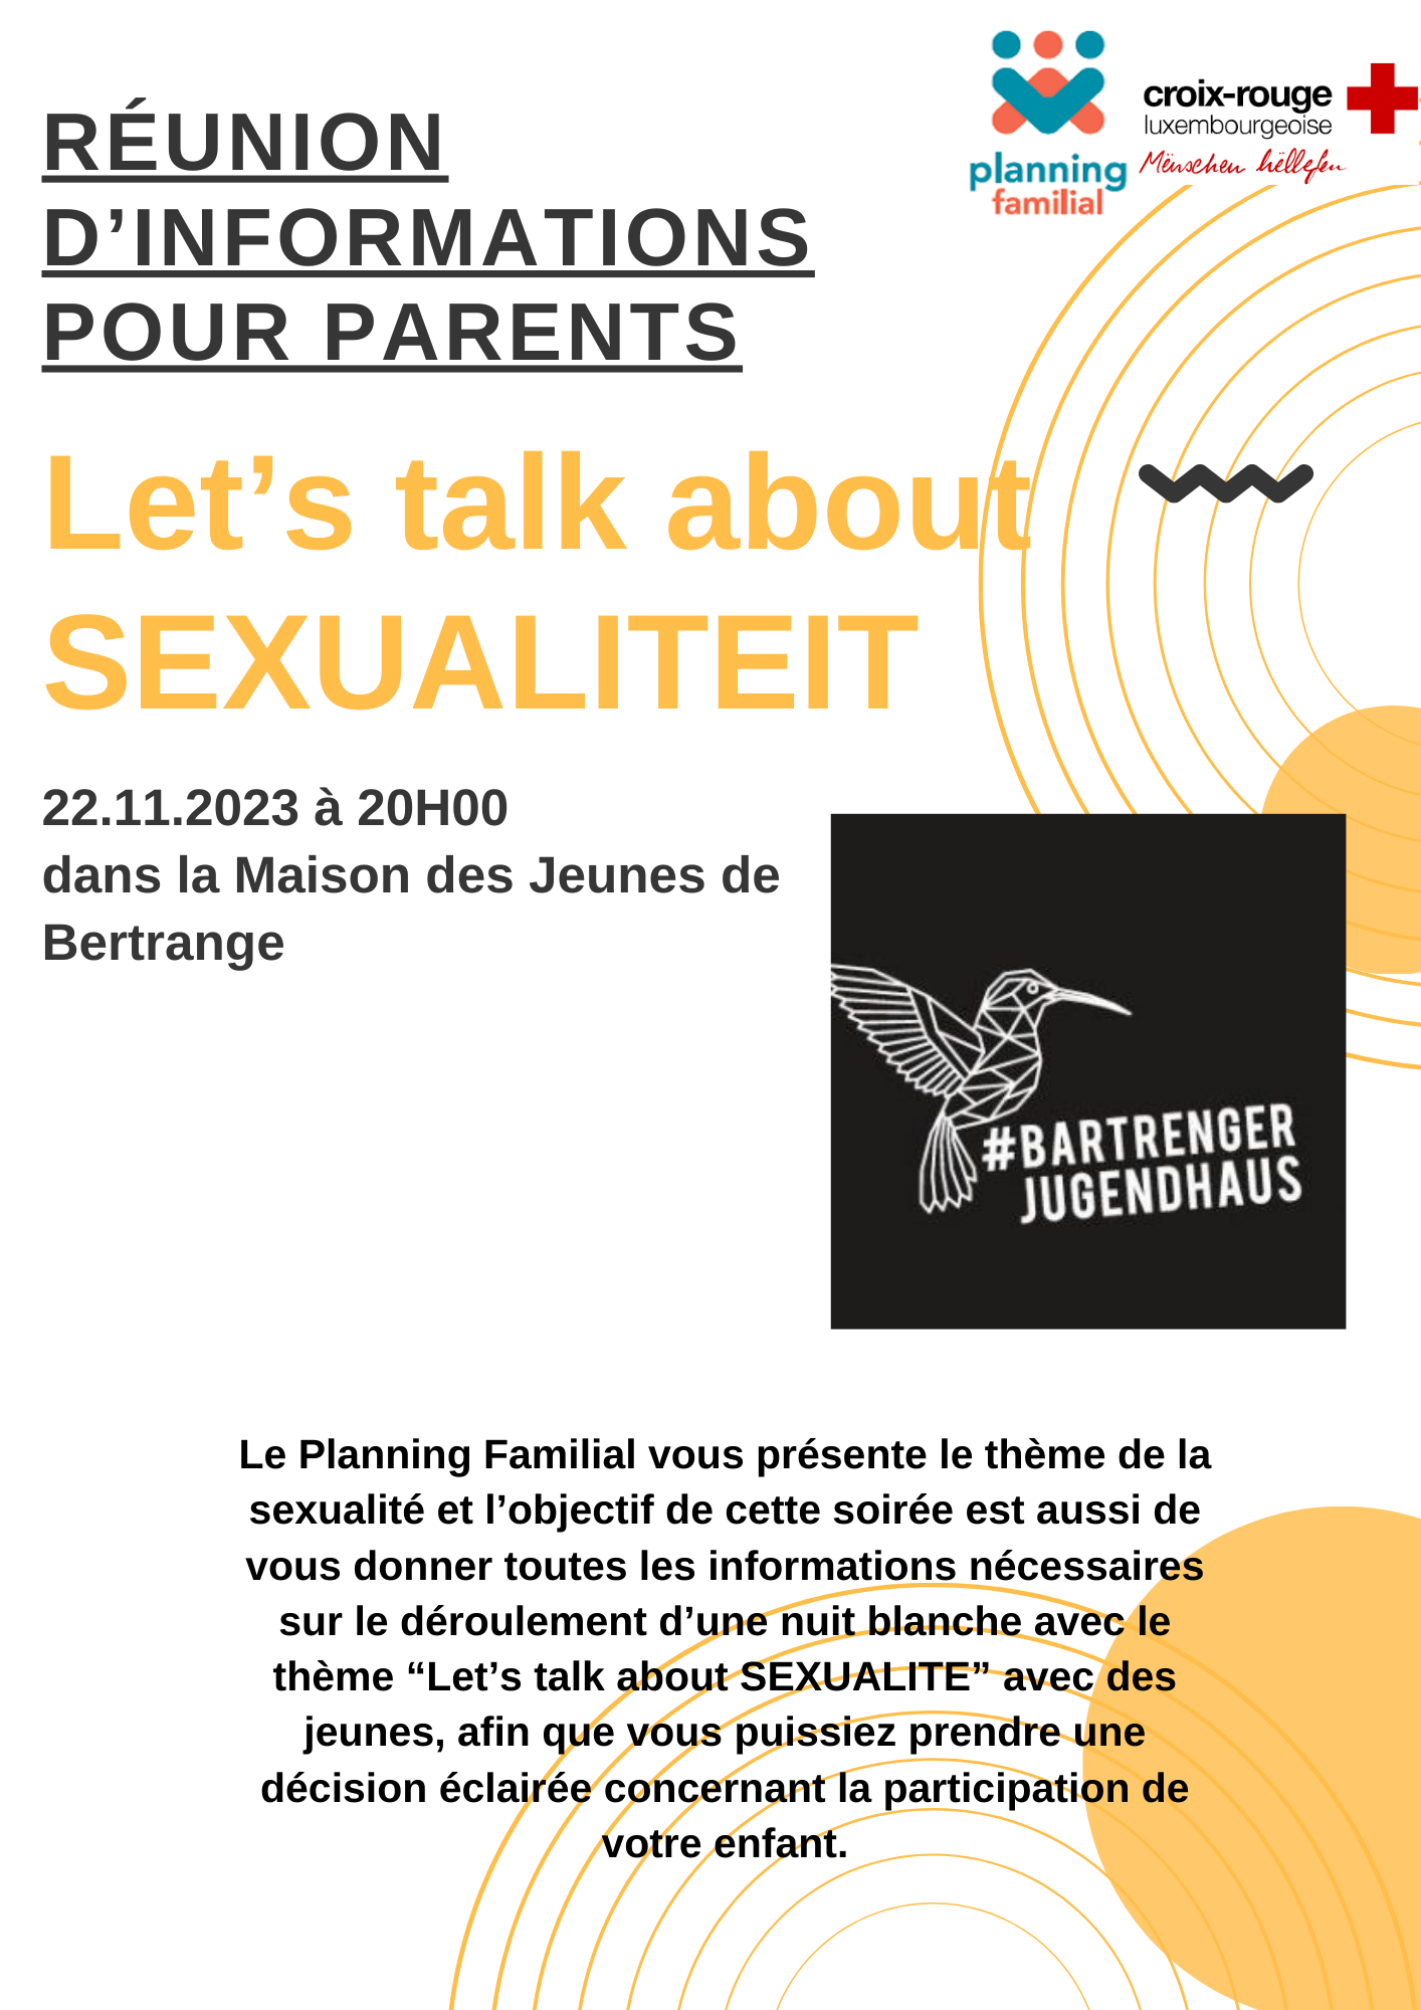 Let's talk about Sexualiteit - Réunion d'informations pour parents